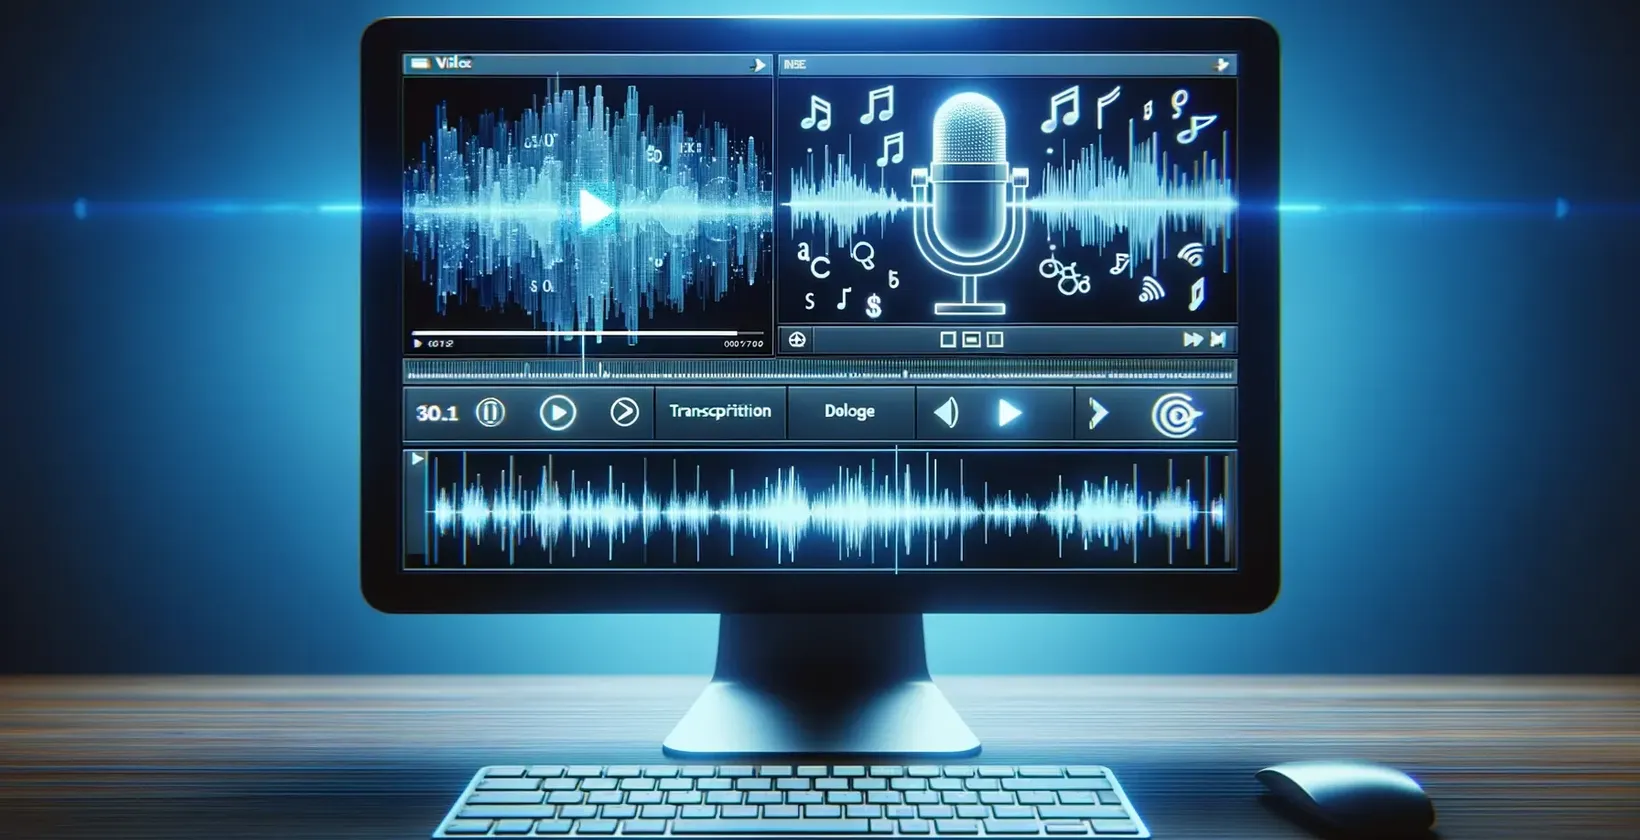 Um ecrã de computador que apresenta notas musicais e um microfone, utilizado para transcrição de vídeo para texto.